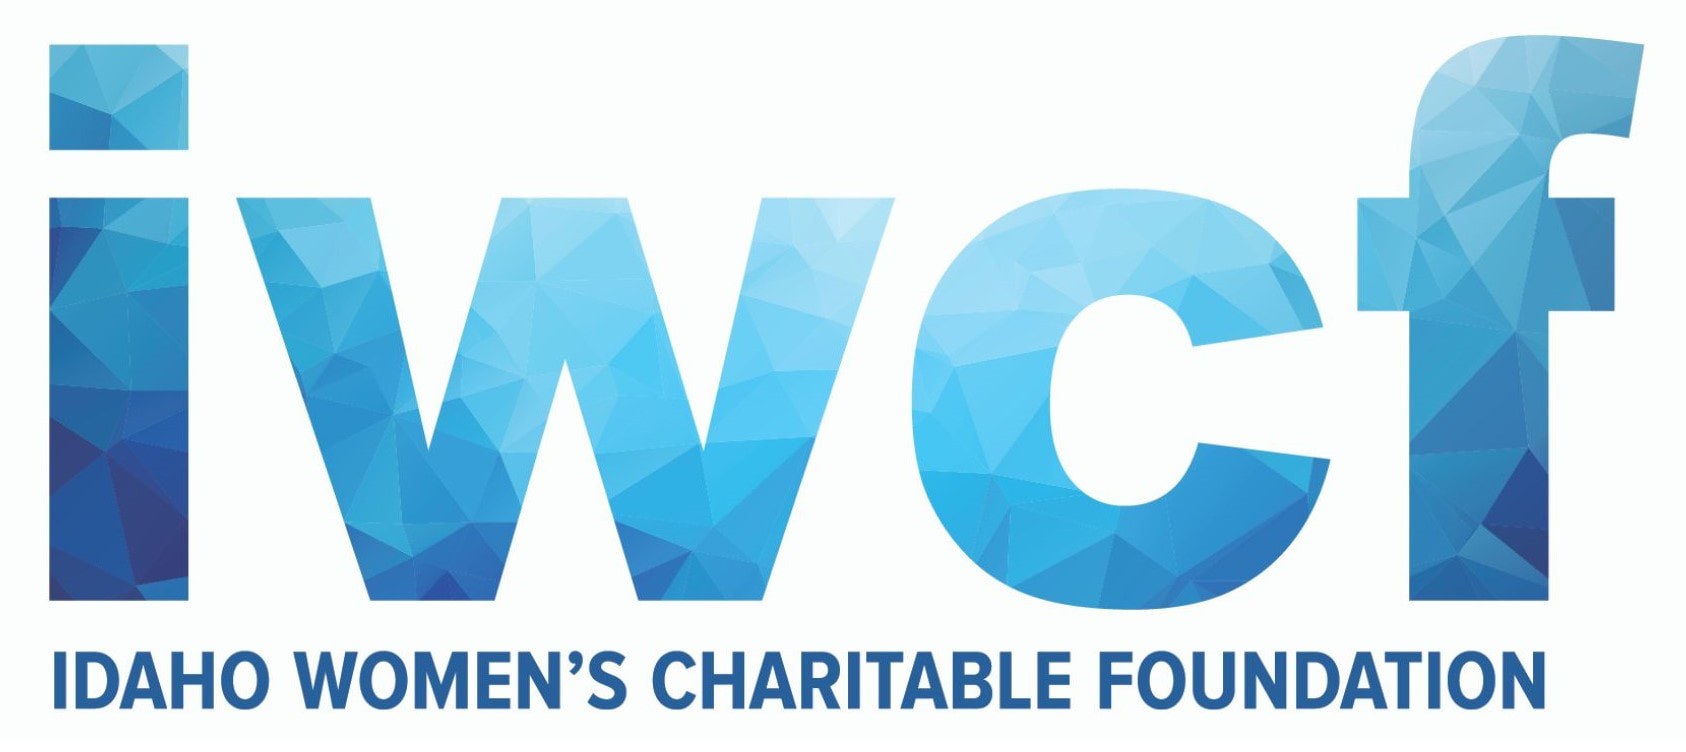 Idaho Women's Charitable Foundation logo